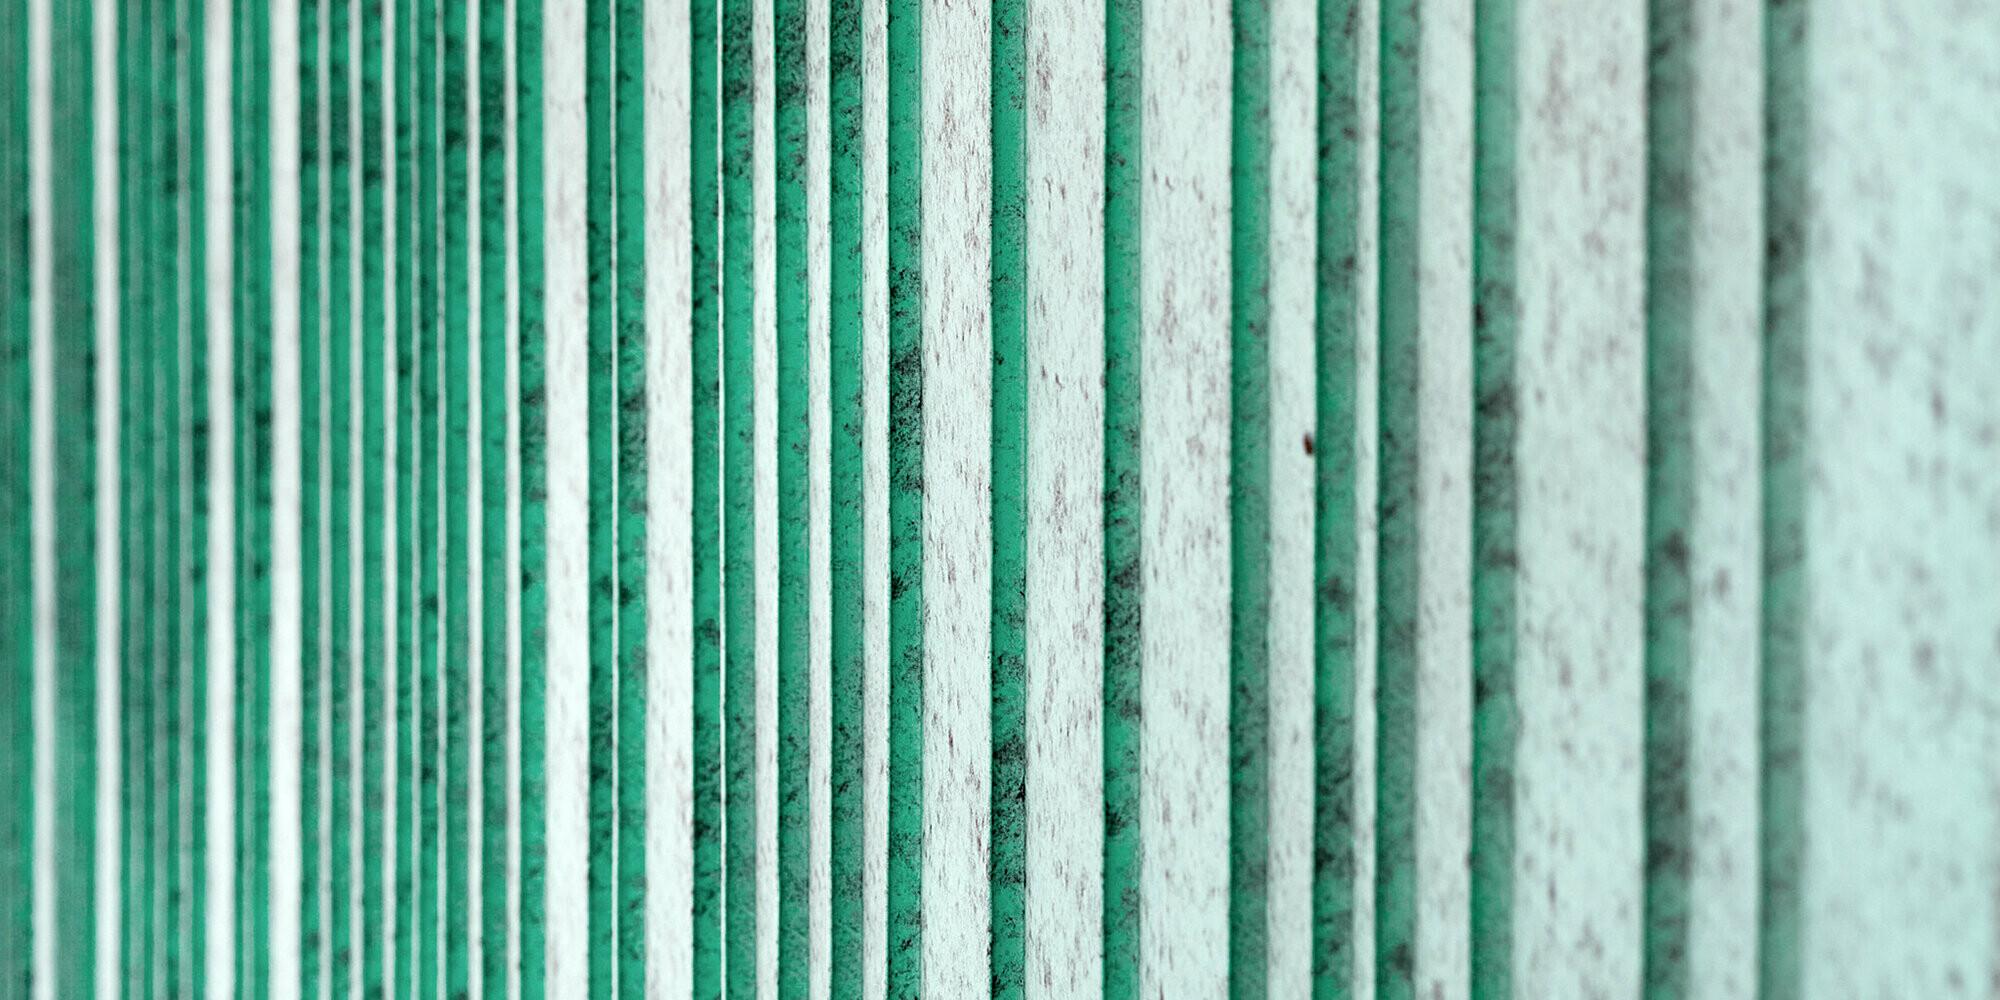 Detailansicht der patinagrünen Aluminium Fassade, rhythmisiert mit unterschiedlich breiten Scharen. Die Farbe erzeugt eine gesprenkelte Optik.